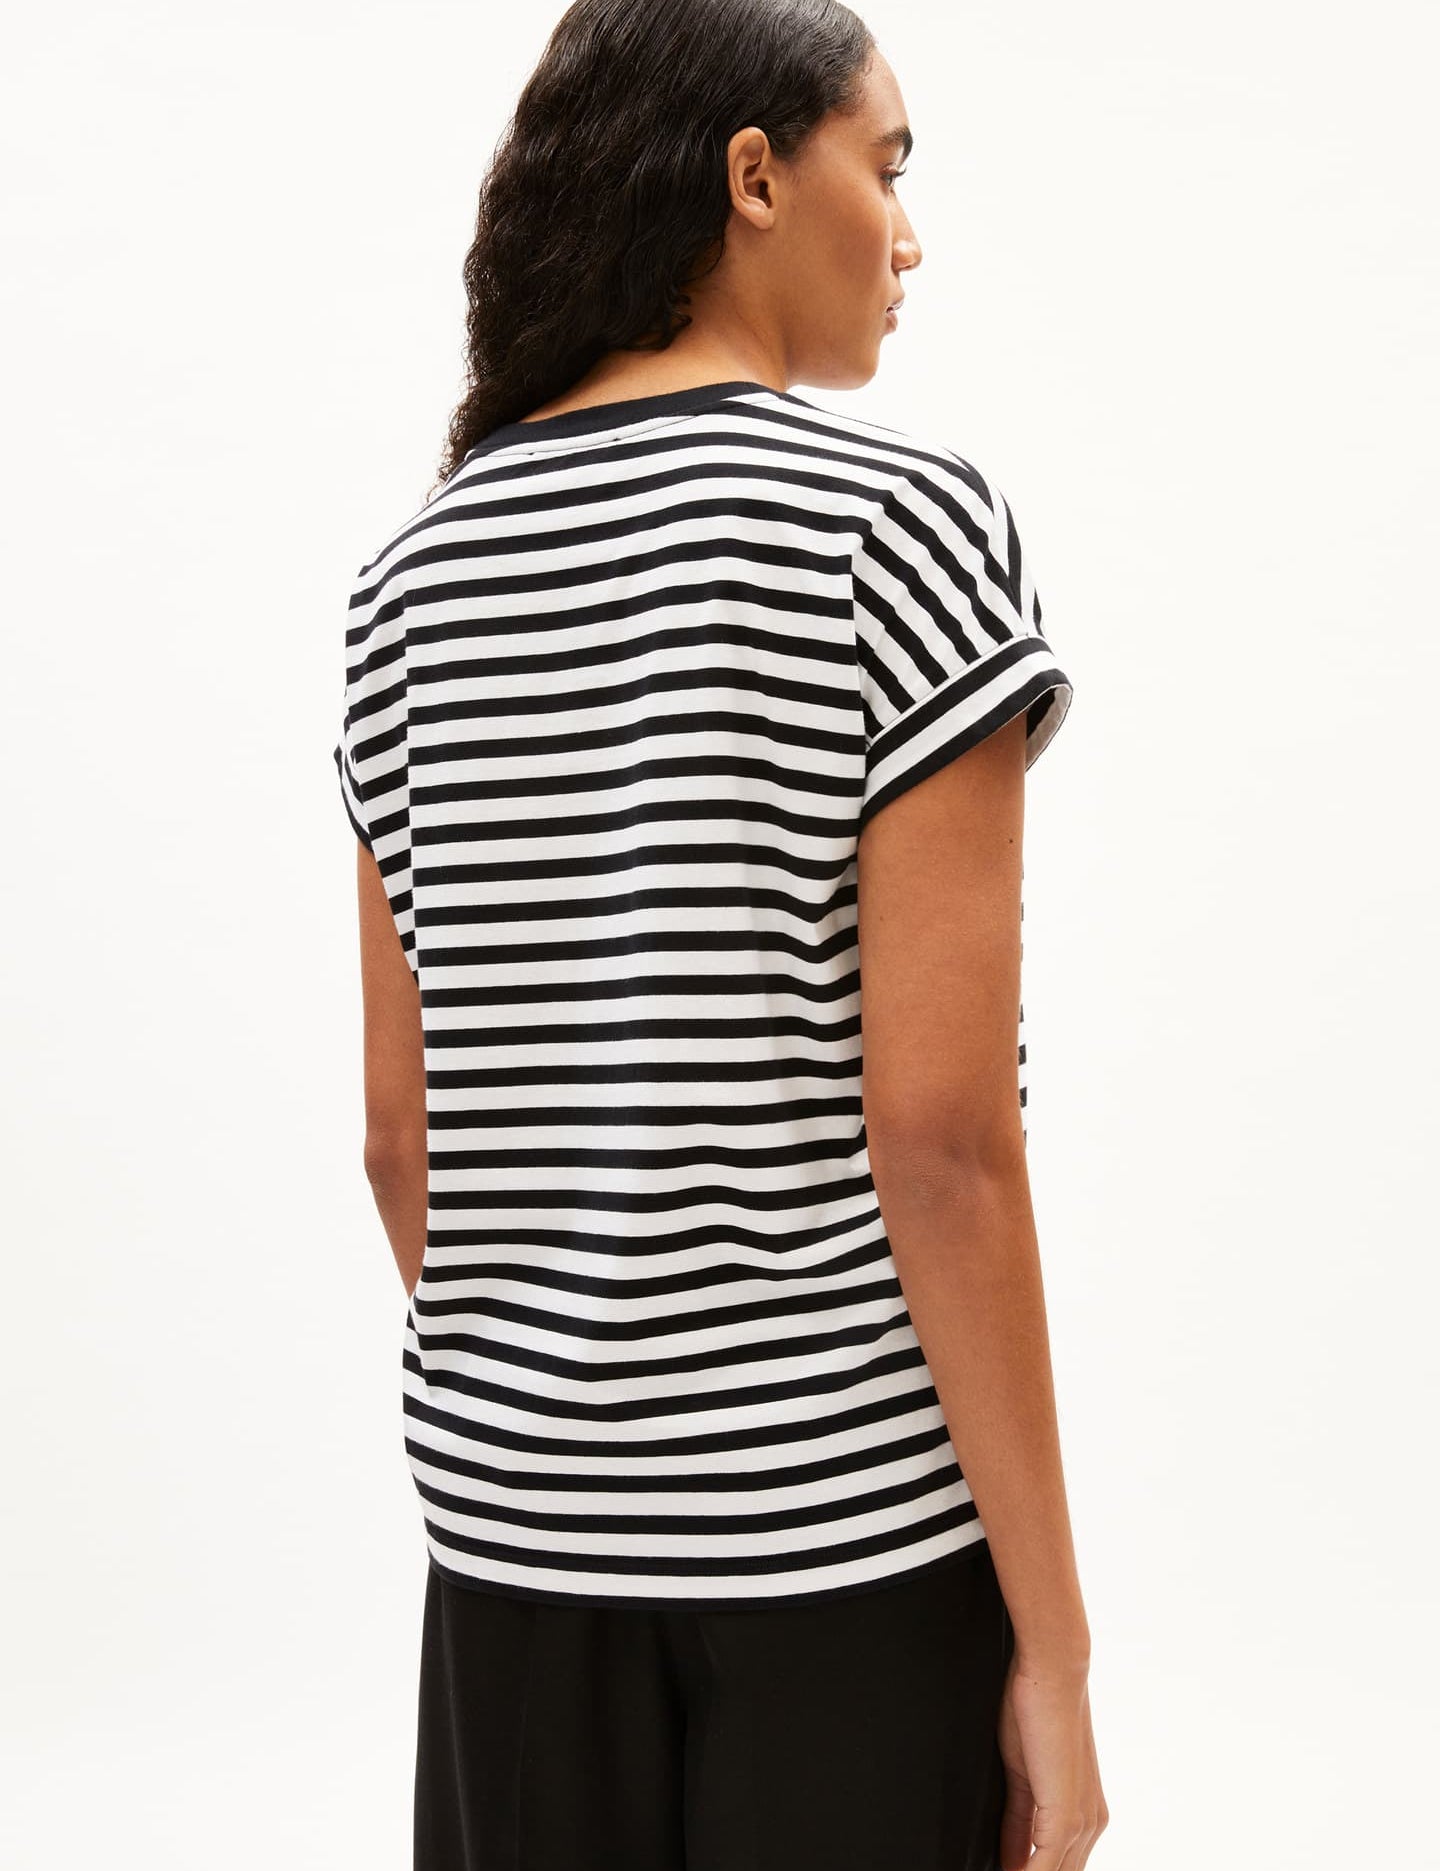 idaara-stripes-white-black-02.jpg